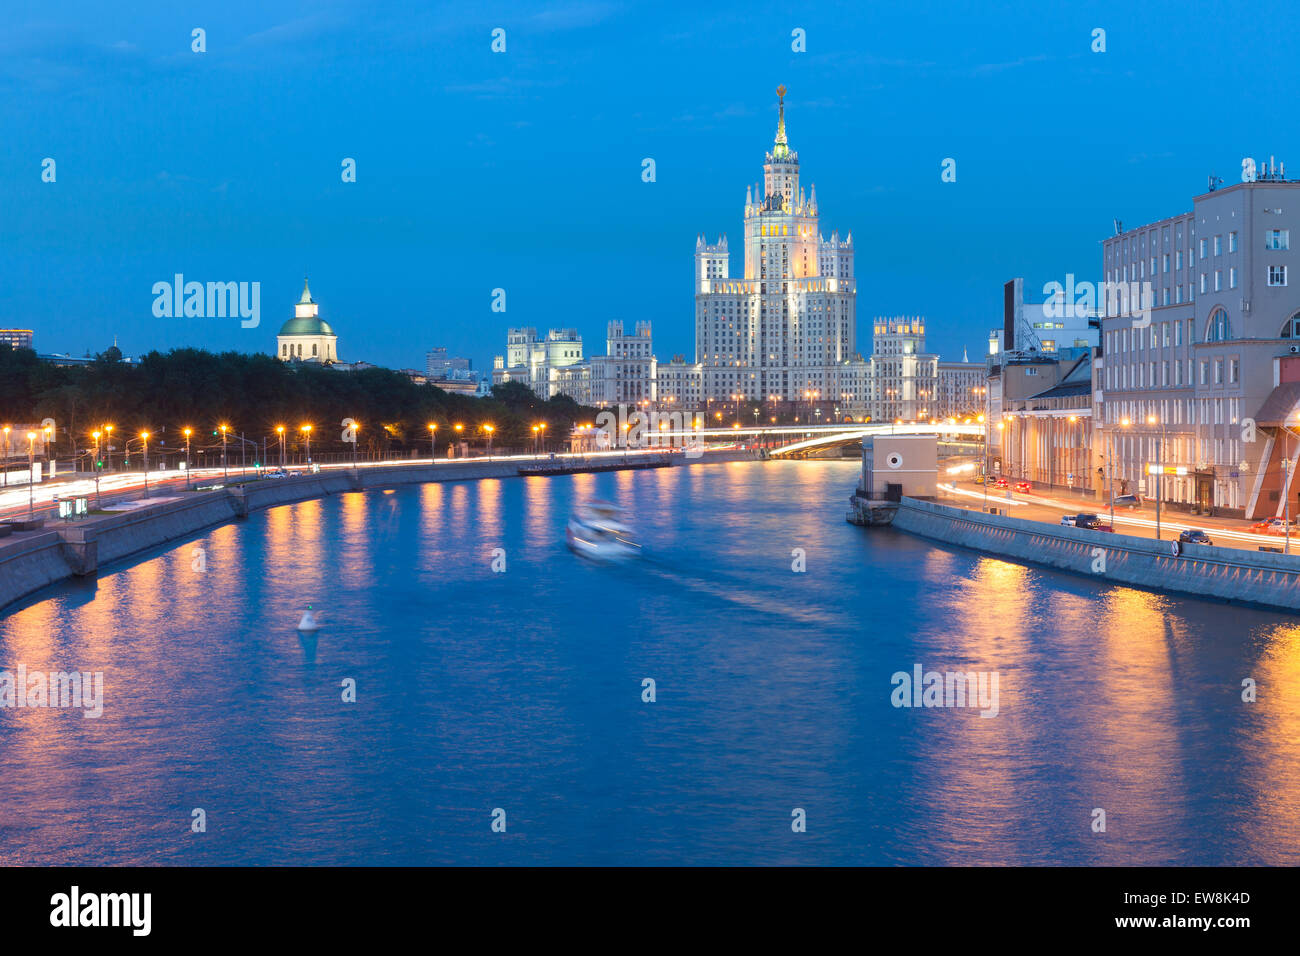 Crépuscule sur le remblai Kotelnicheskaya Building, l'un des sept Sœurs bâtiments à Moscou, Russie. Banque D'Images